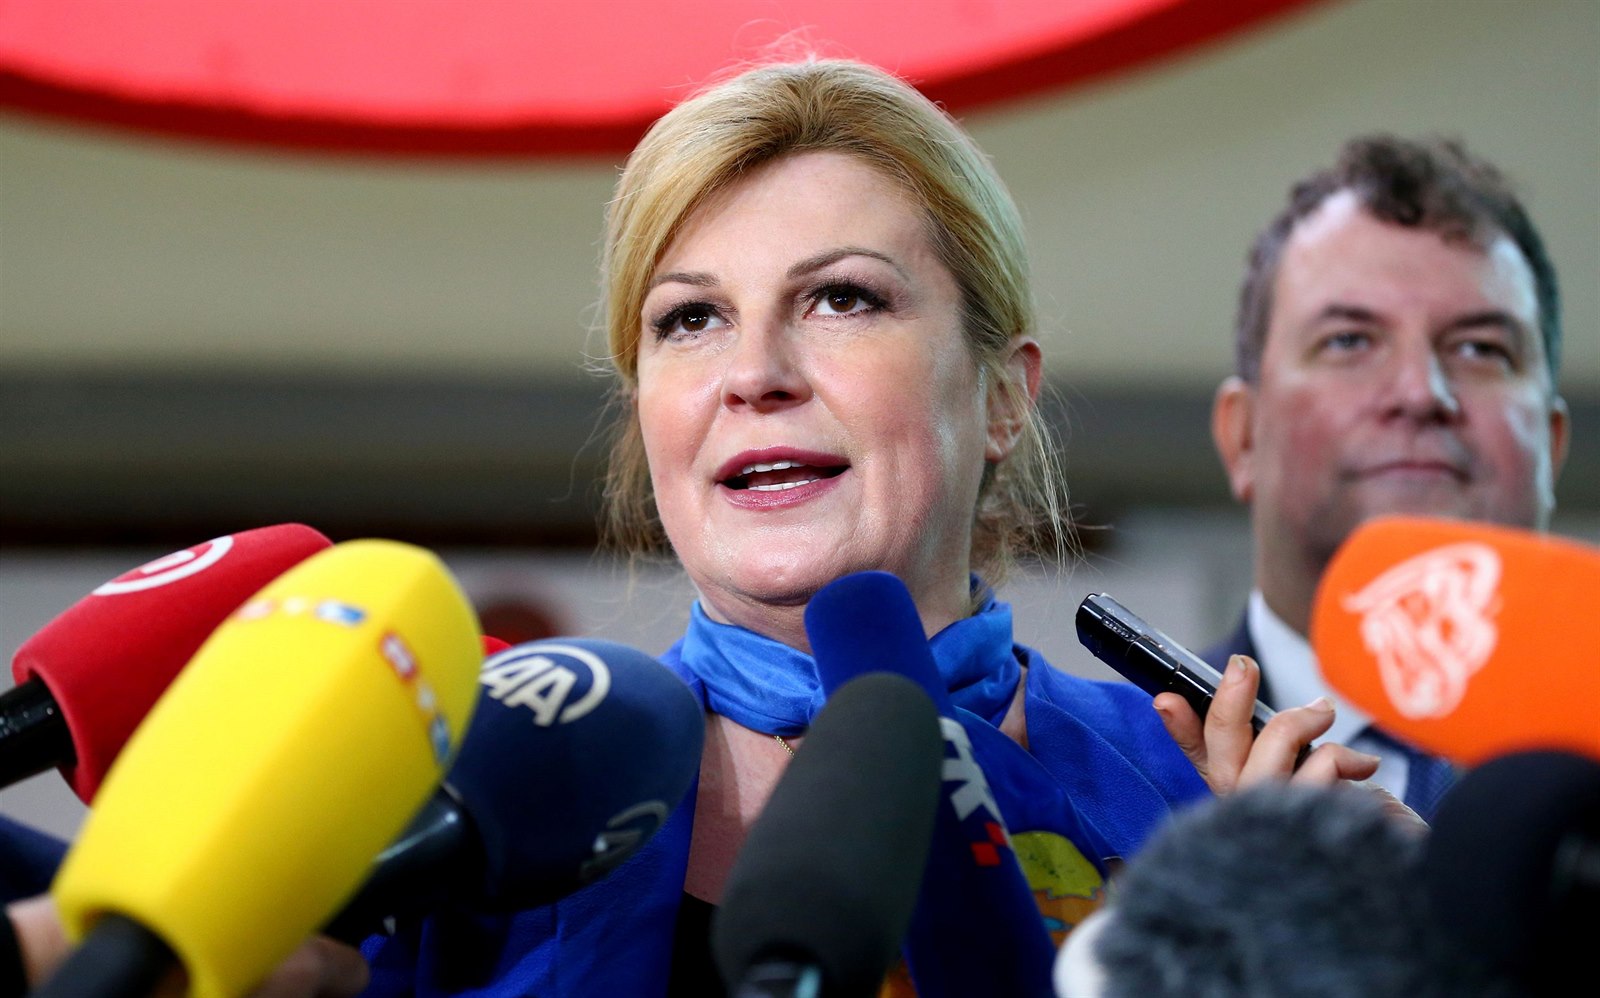 Chorvatská prezidentka nechtěně vyzvala voliče, aby volili jejího soupeře |  Svět | Lidovky.cz